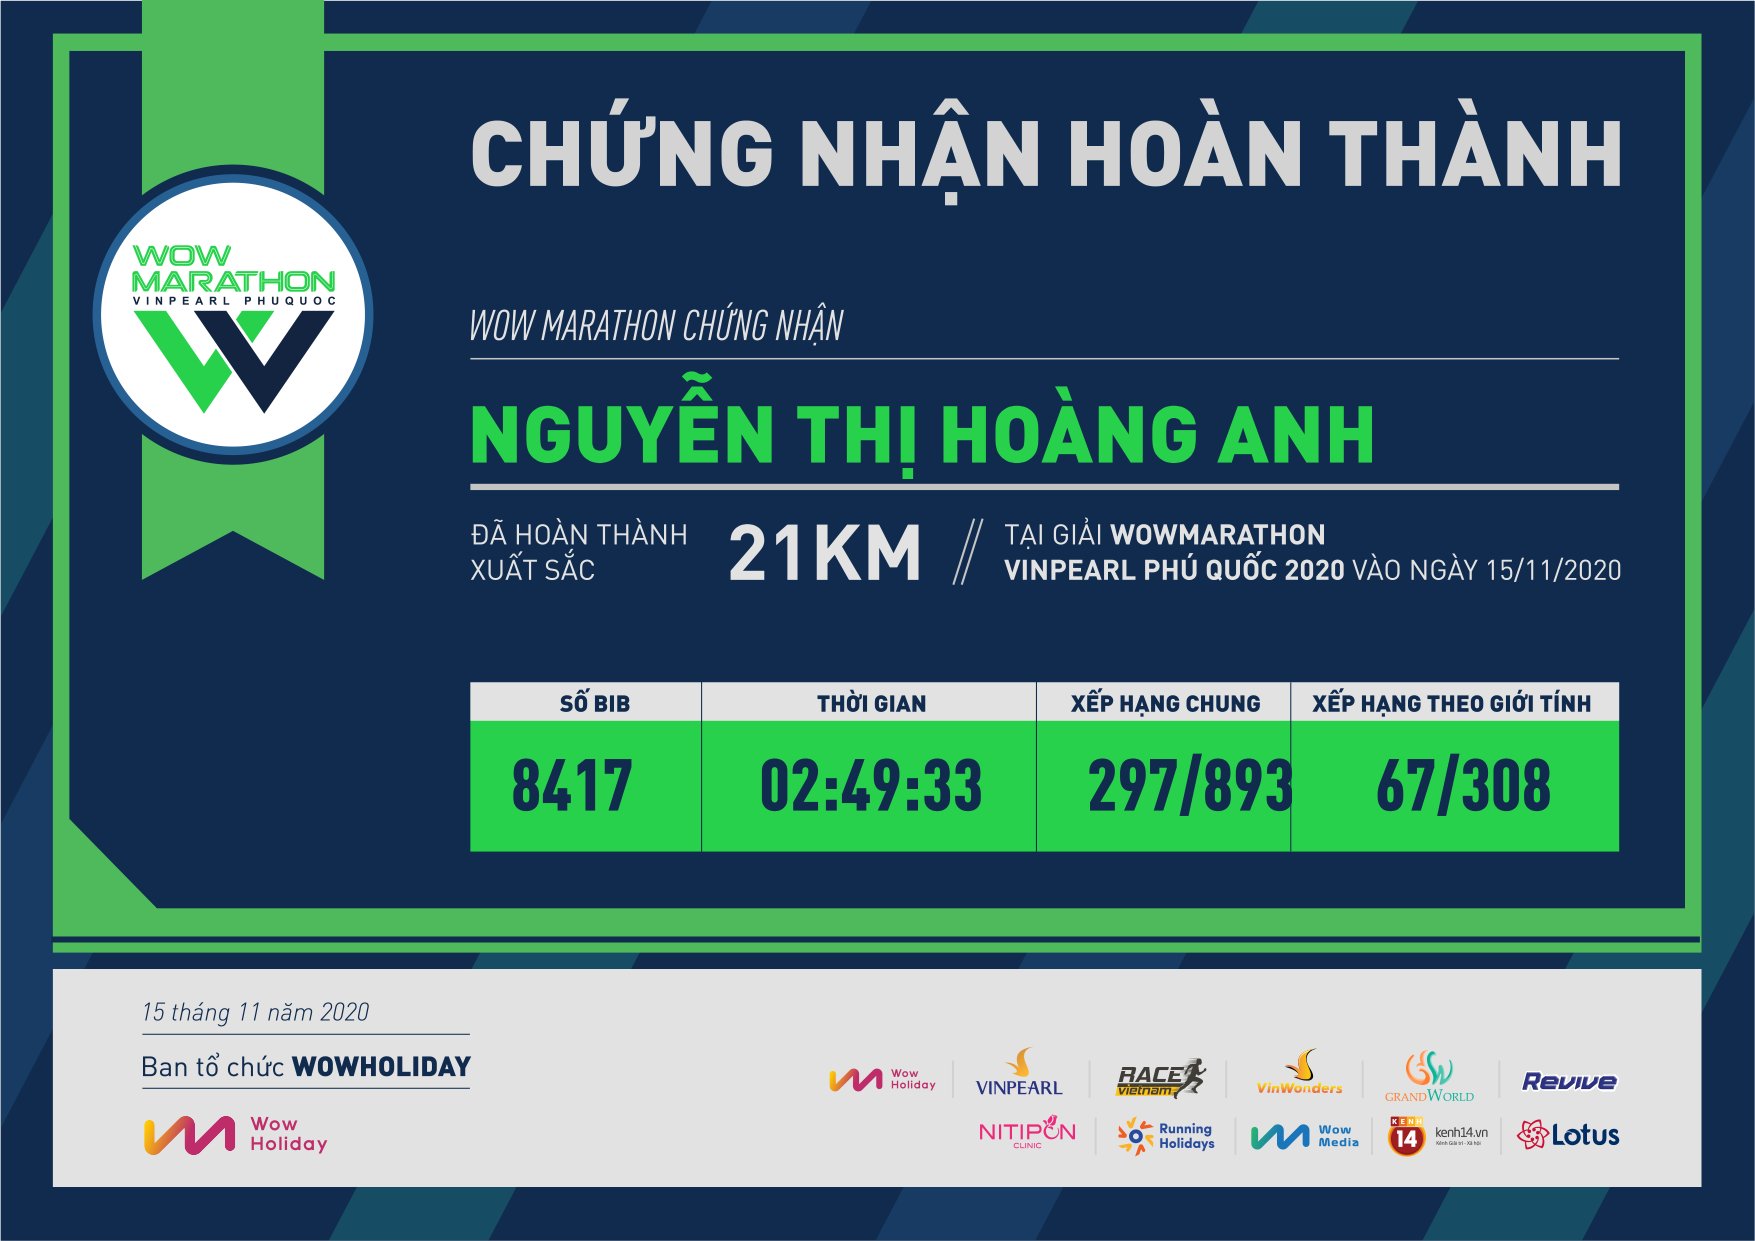 8417 - Nguyễn Thị Hoàng Anh